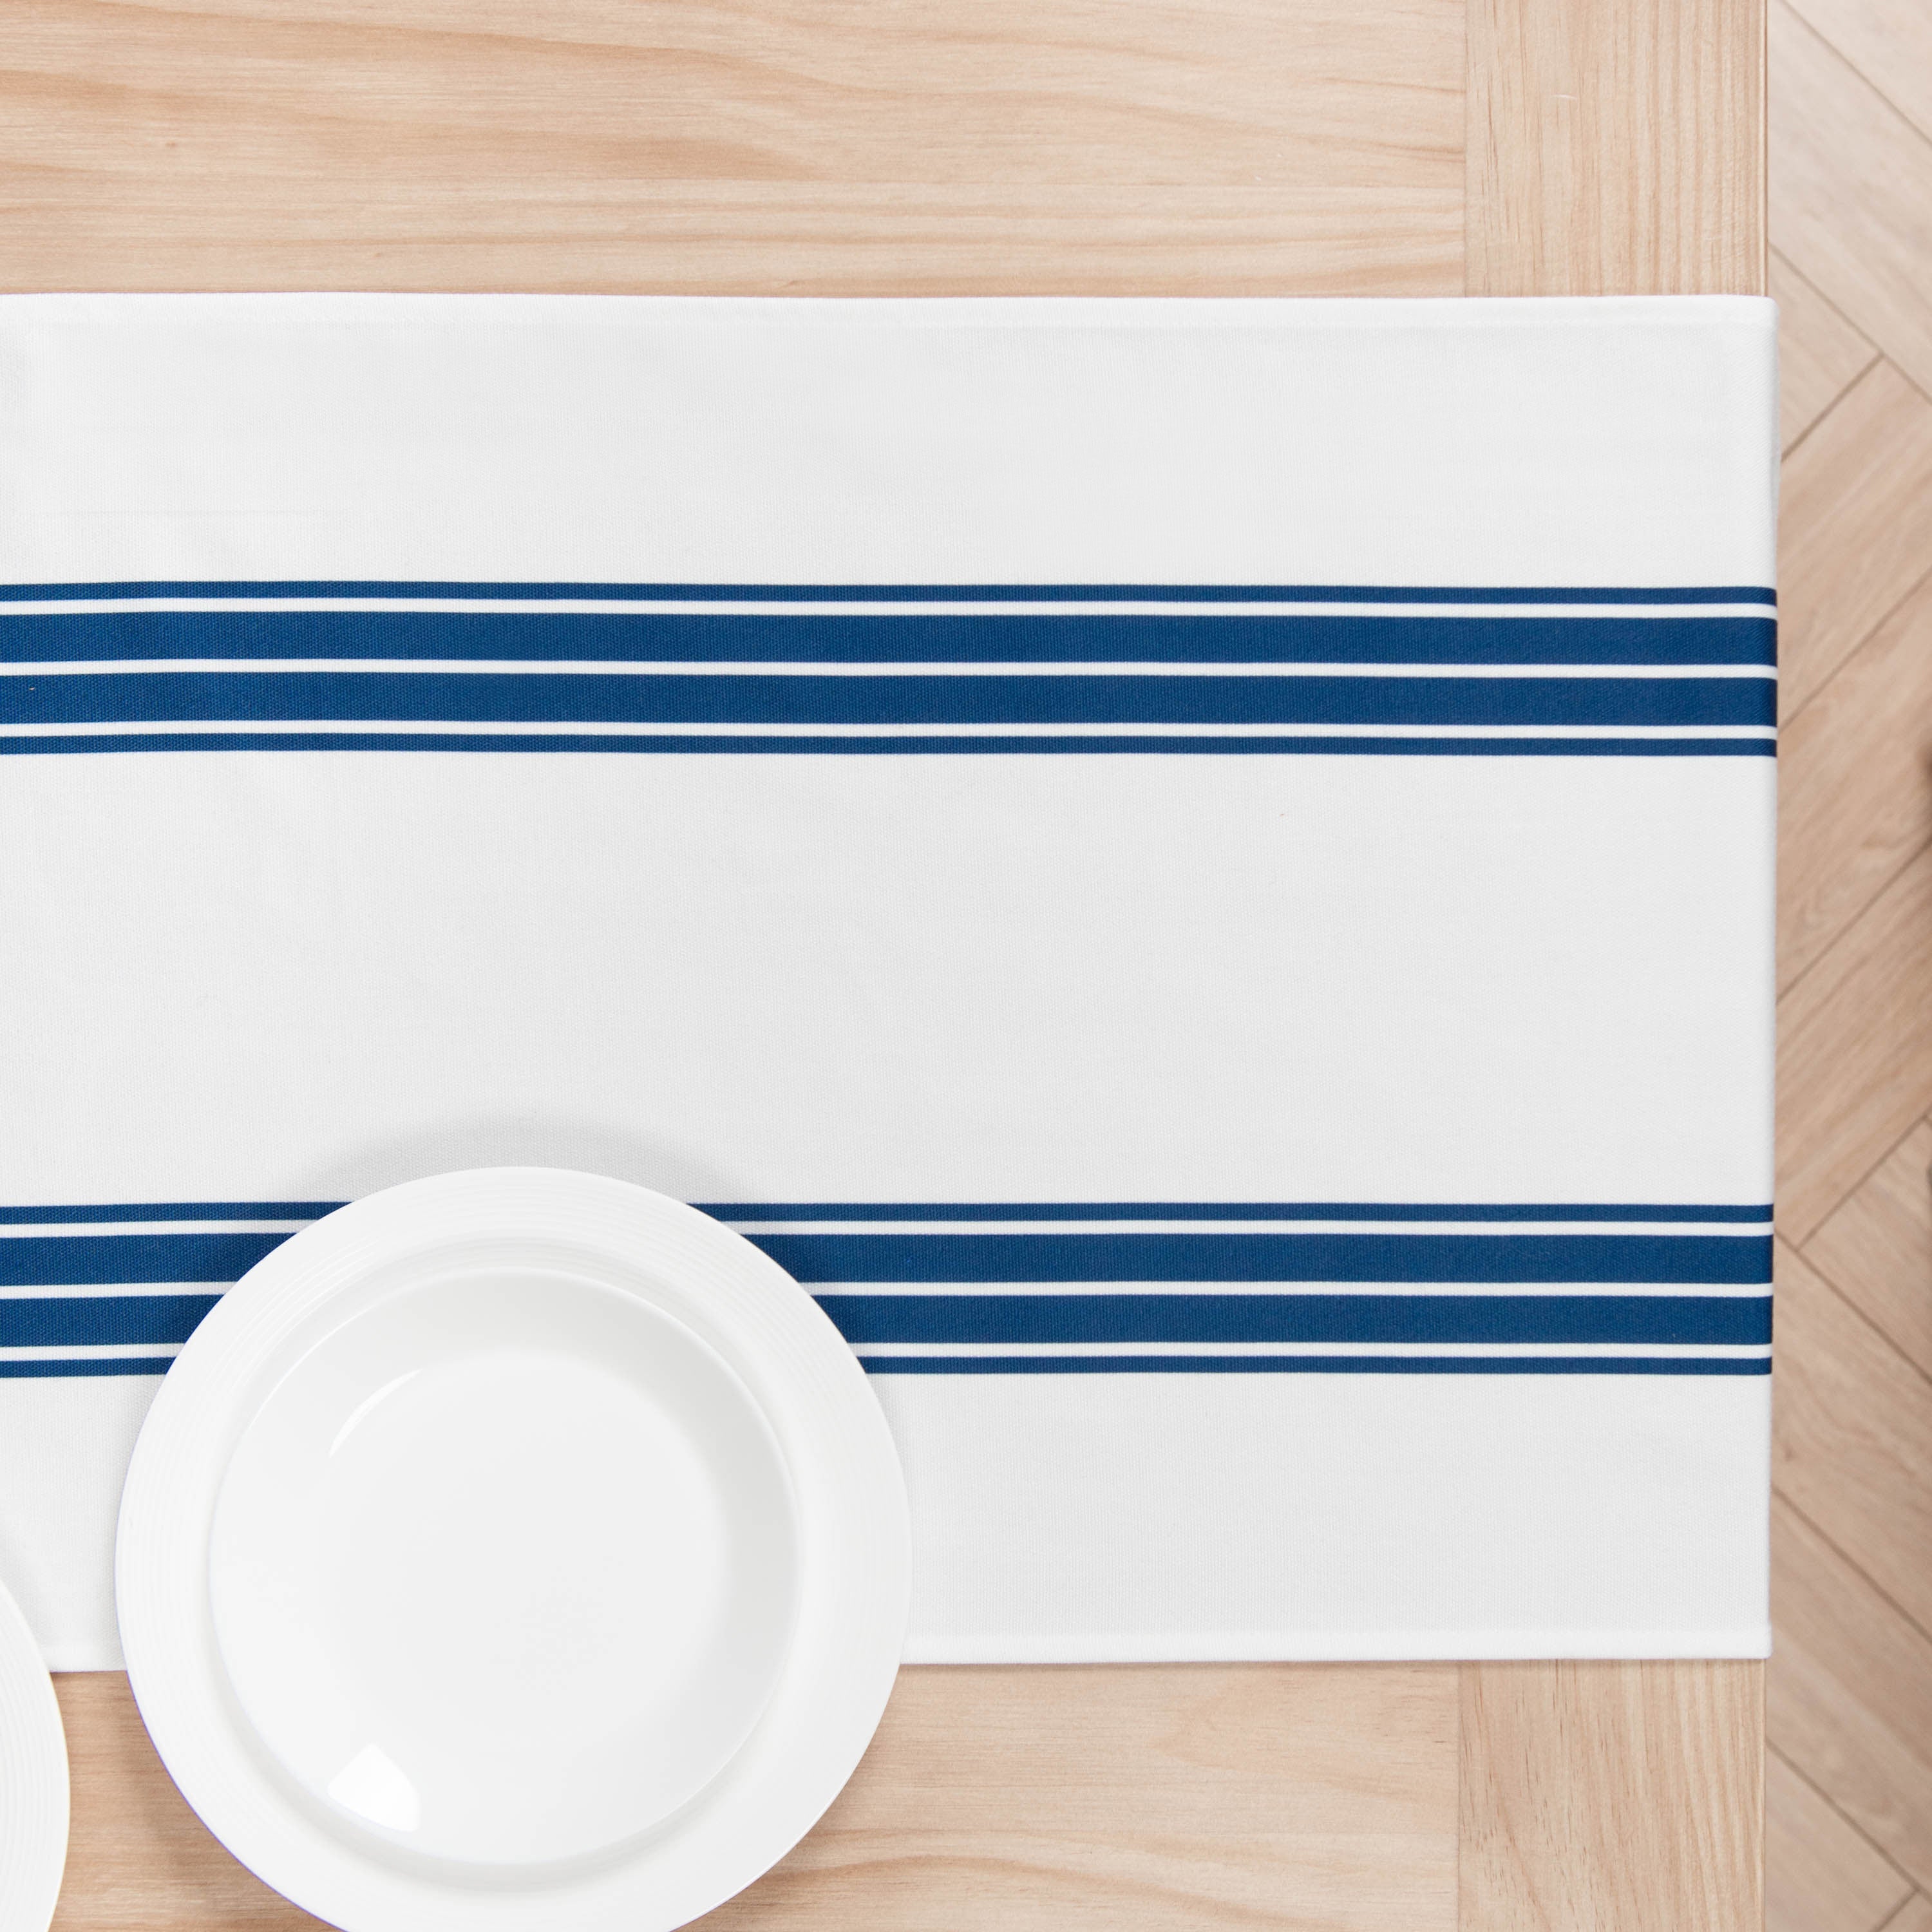 Coastal Table Runner, Aviv Stripe Tassel, Navy Blue, 18"x108"